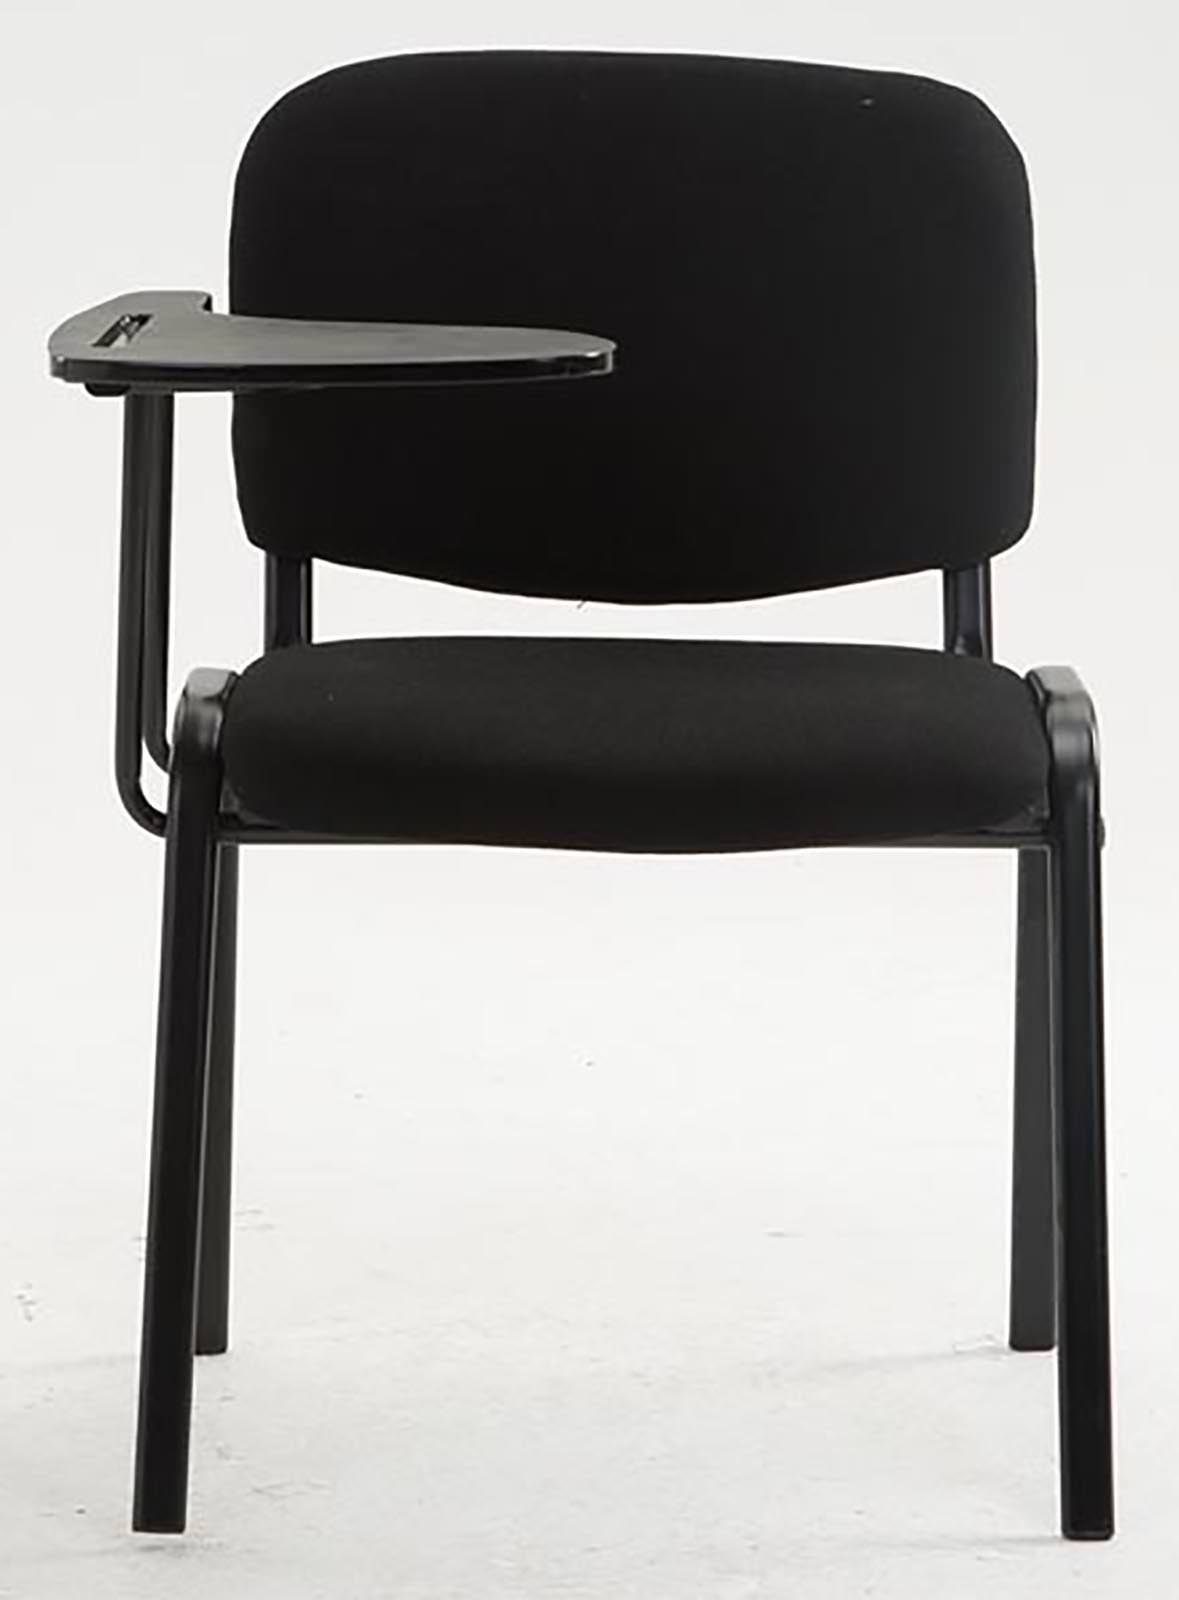 Tisch klappbarer CLP schwarz Ken gepolstert, Set), (4er Besucherstuhl Stoff